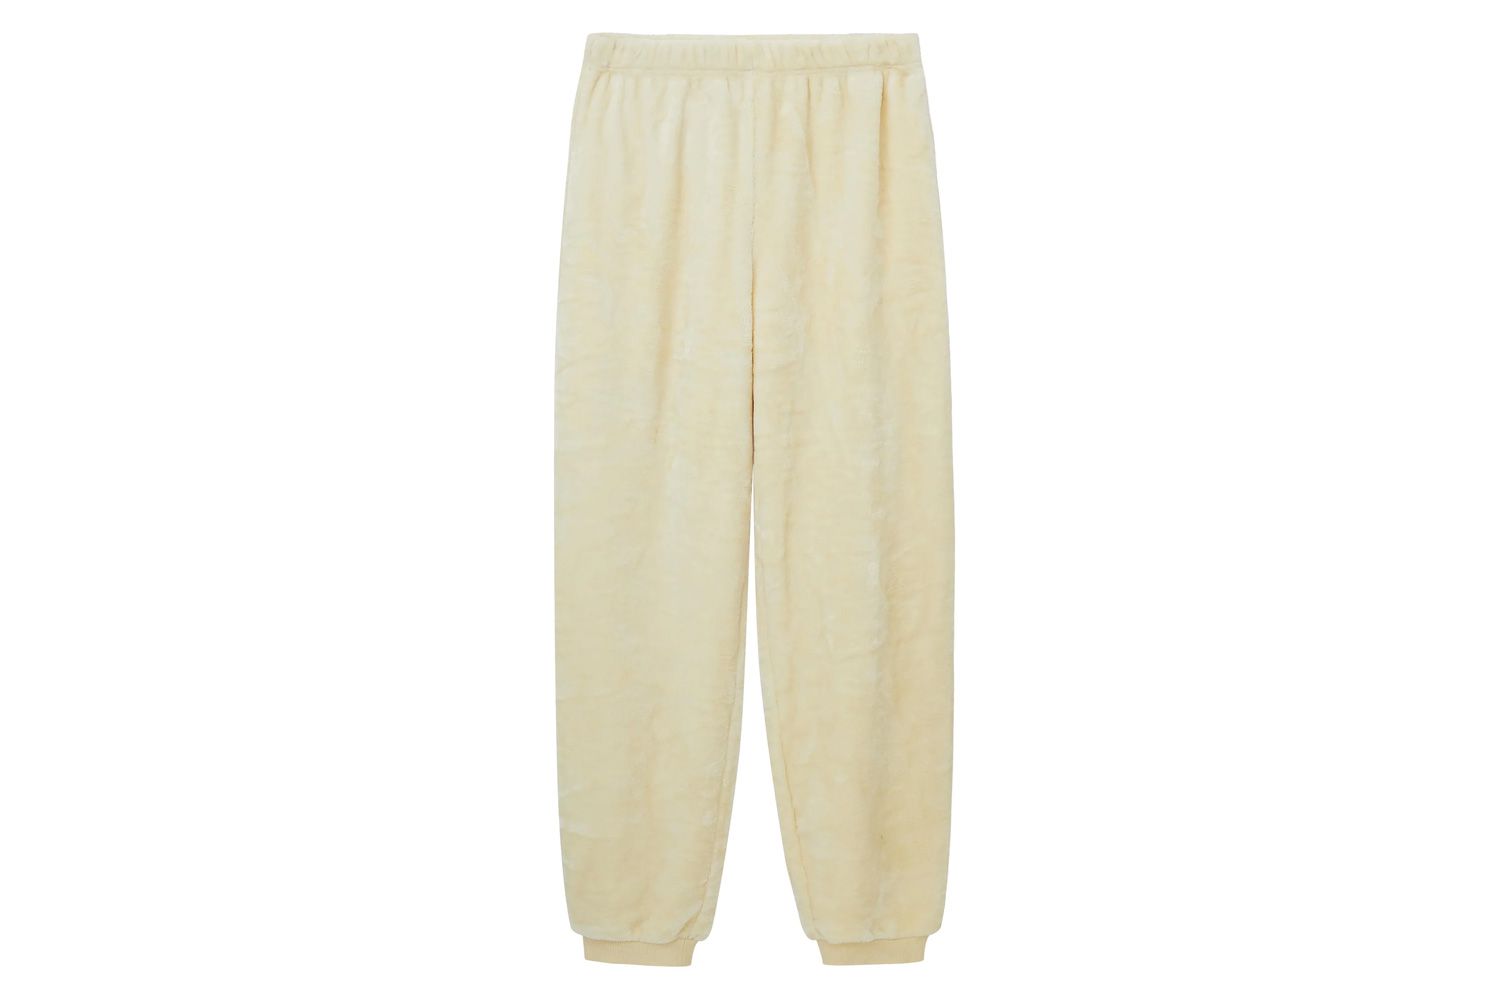 NEIWAI Classic Cozy Fleece Pijama Pants 2. 0